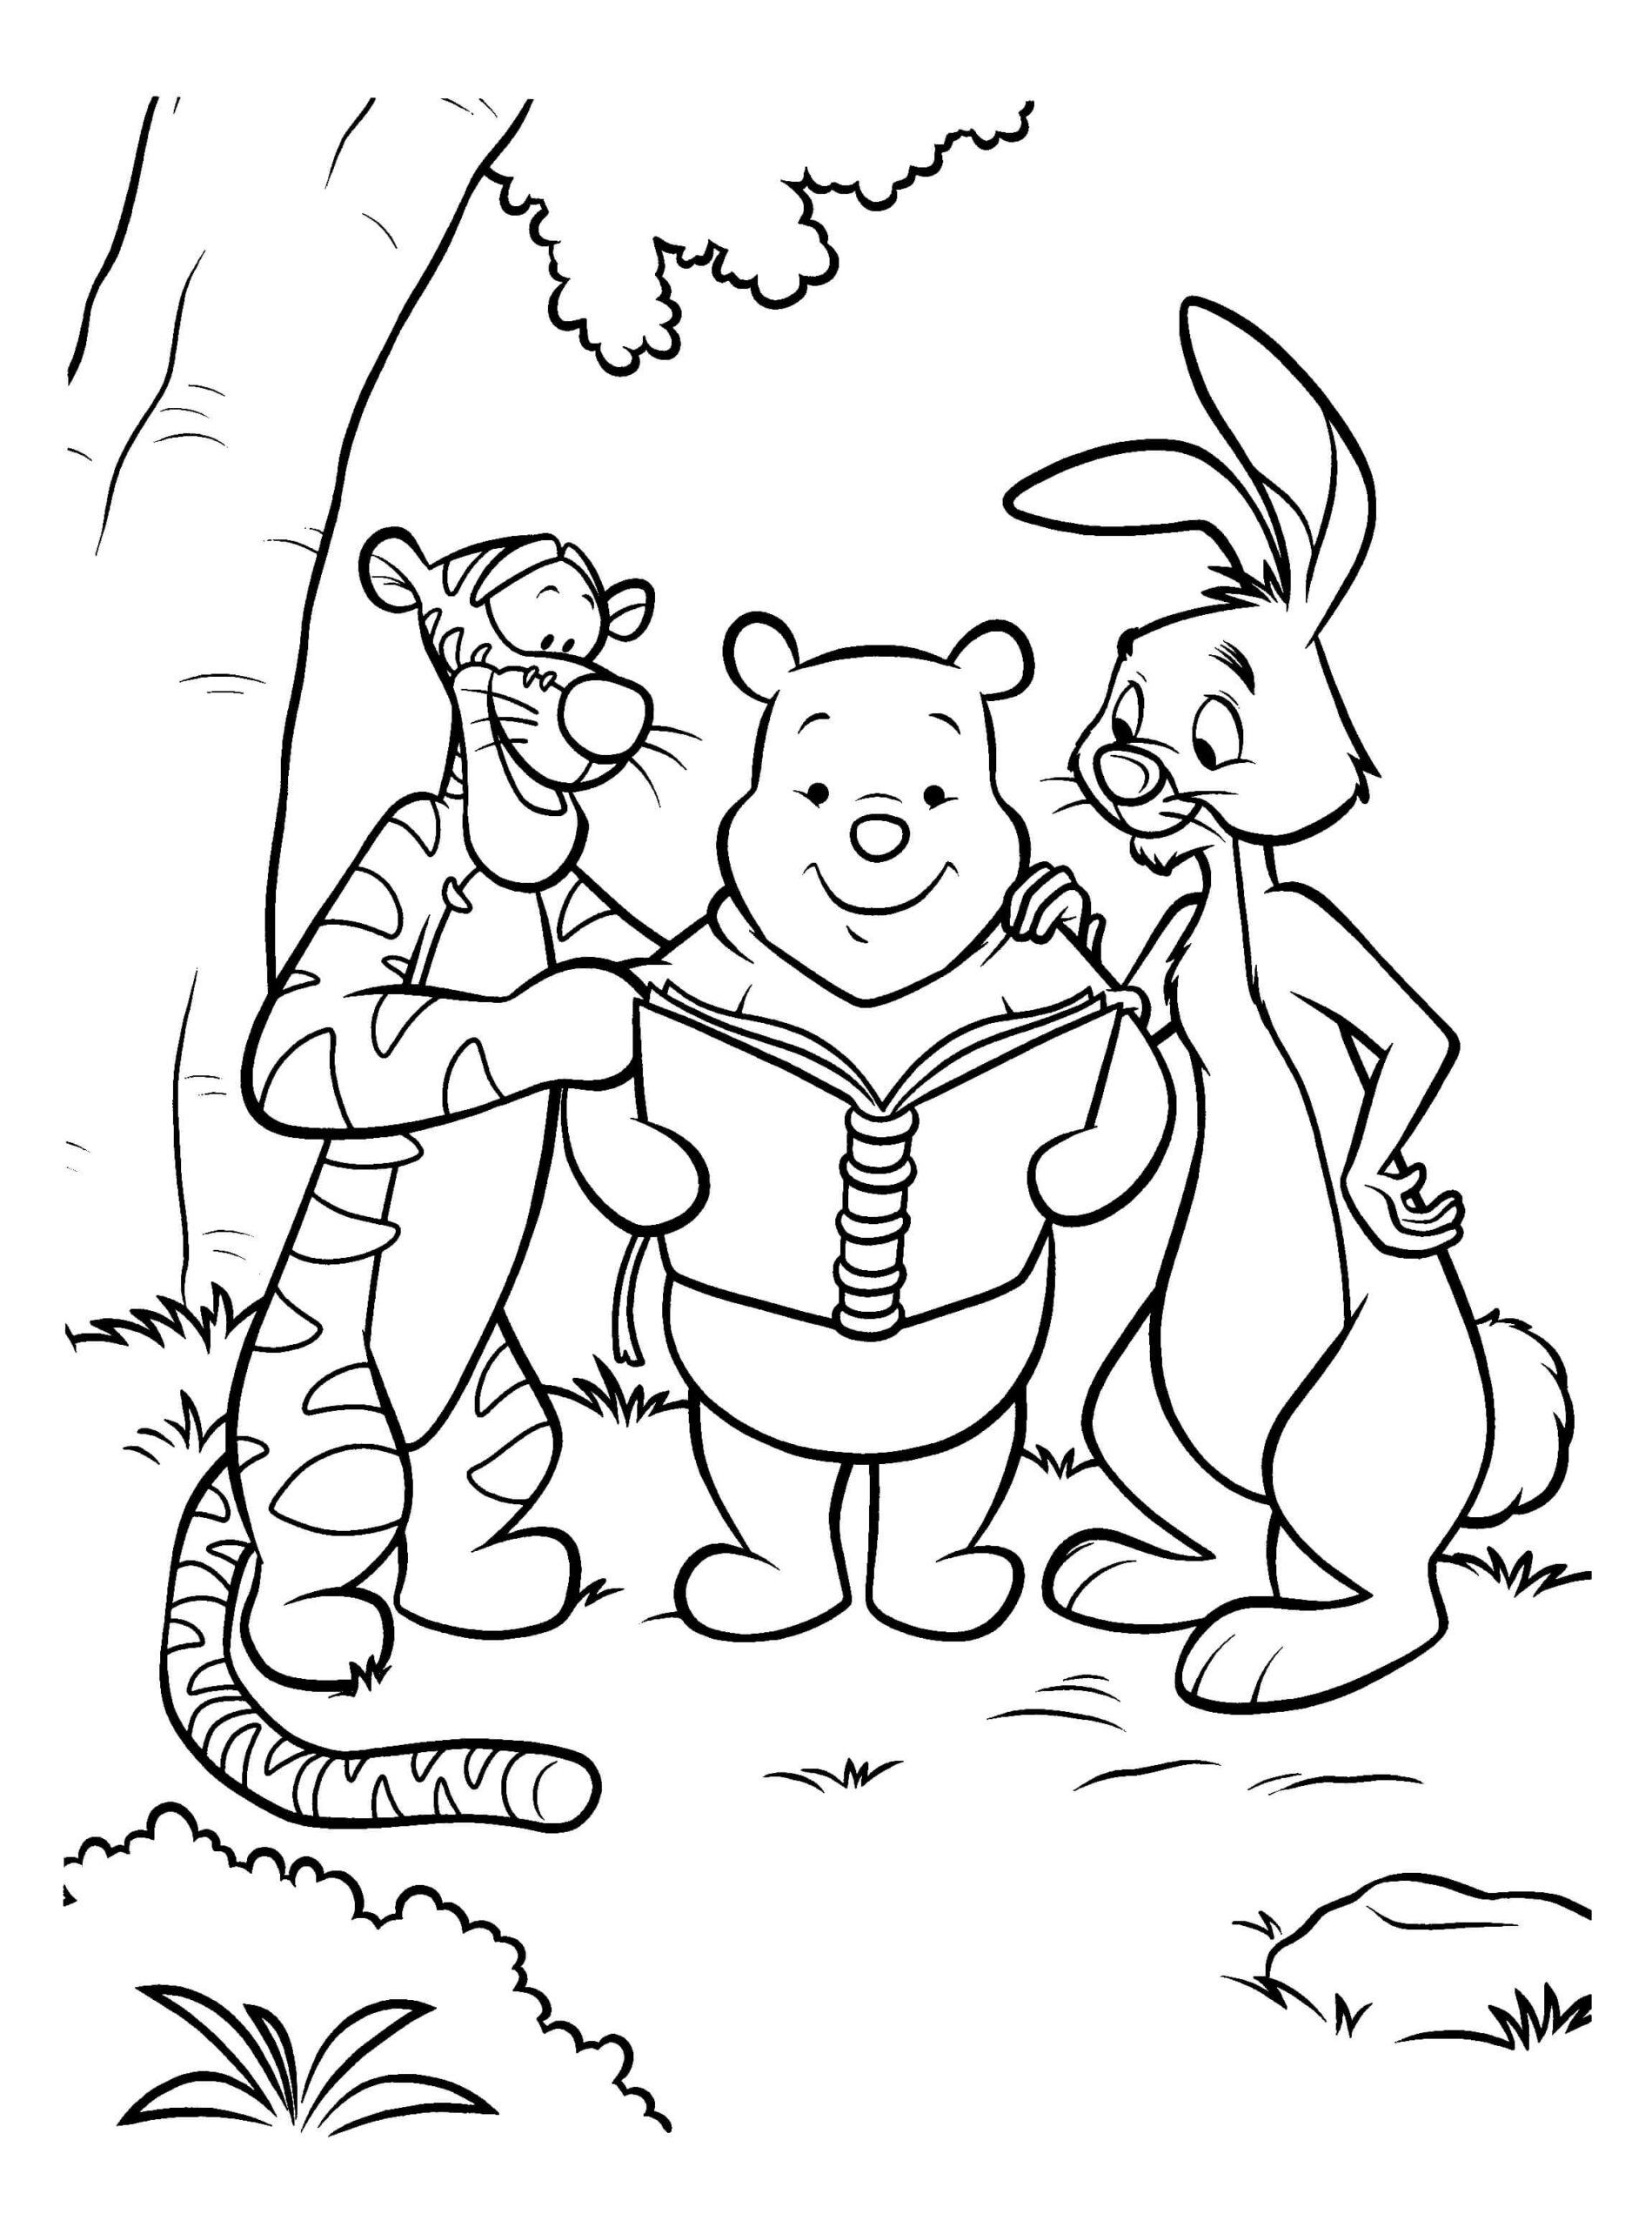 Dibujos de Lectura y Amigos de Winnie de Pooh para colorear